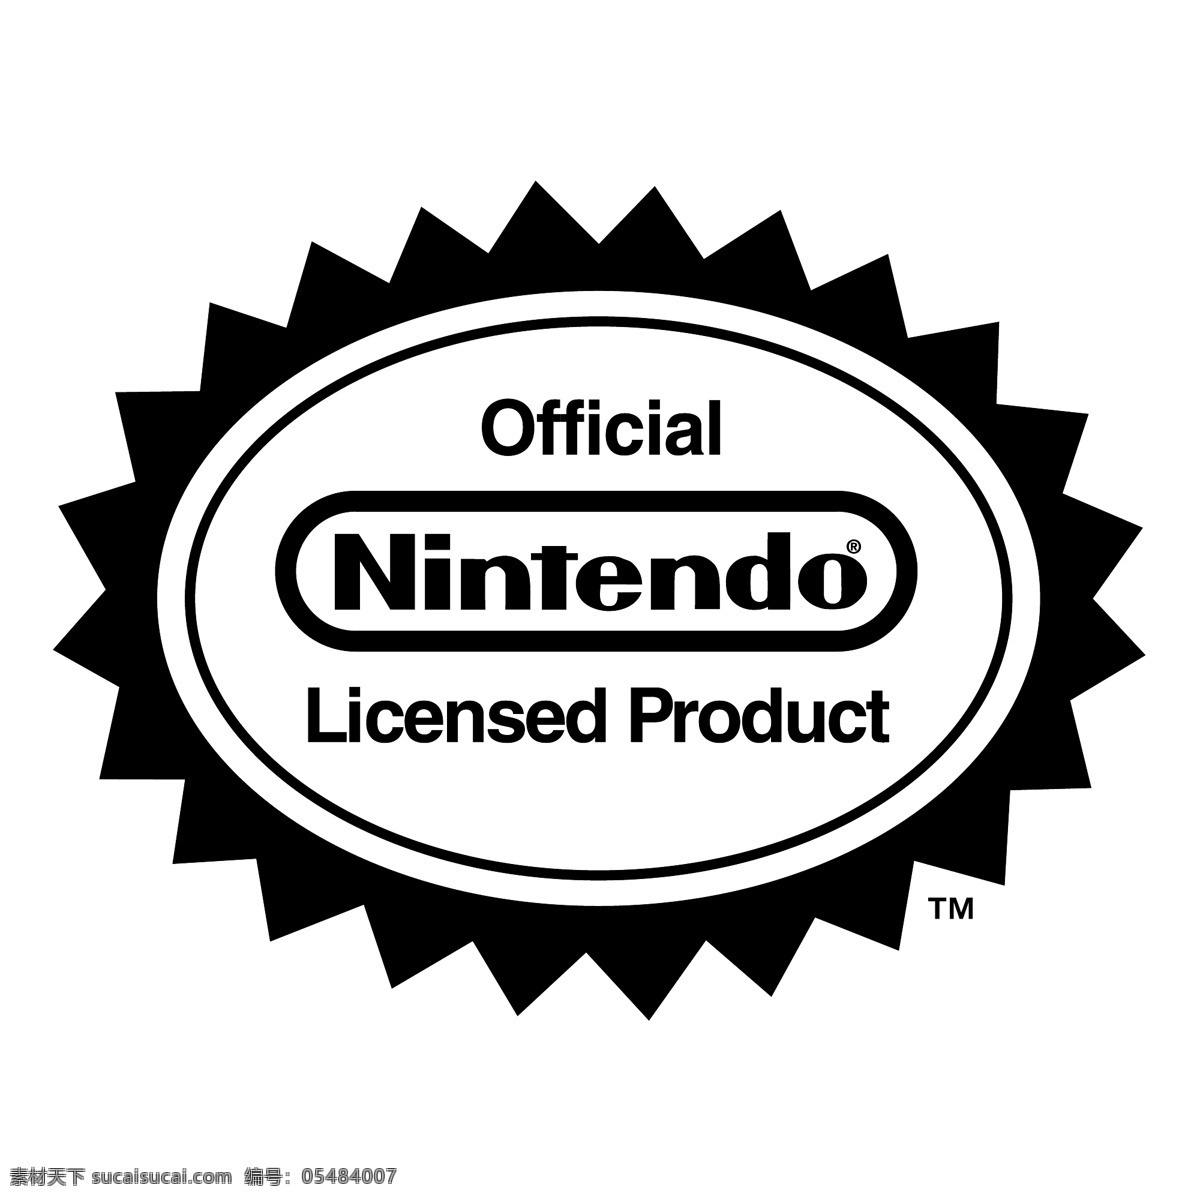 任天堂 官方 授权 产品 免费 标志 psd源文件 logo设计